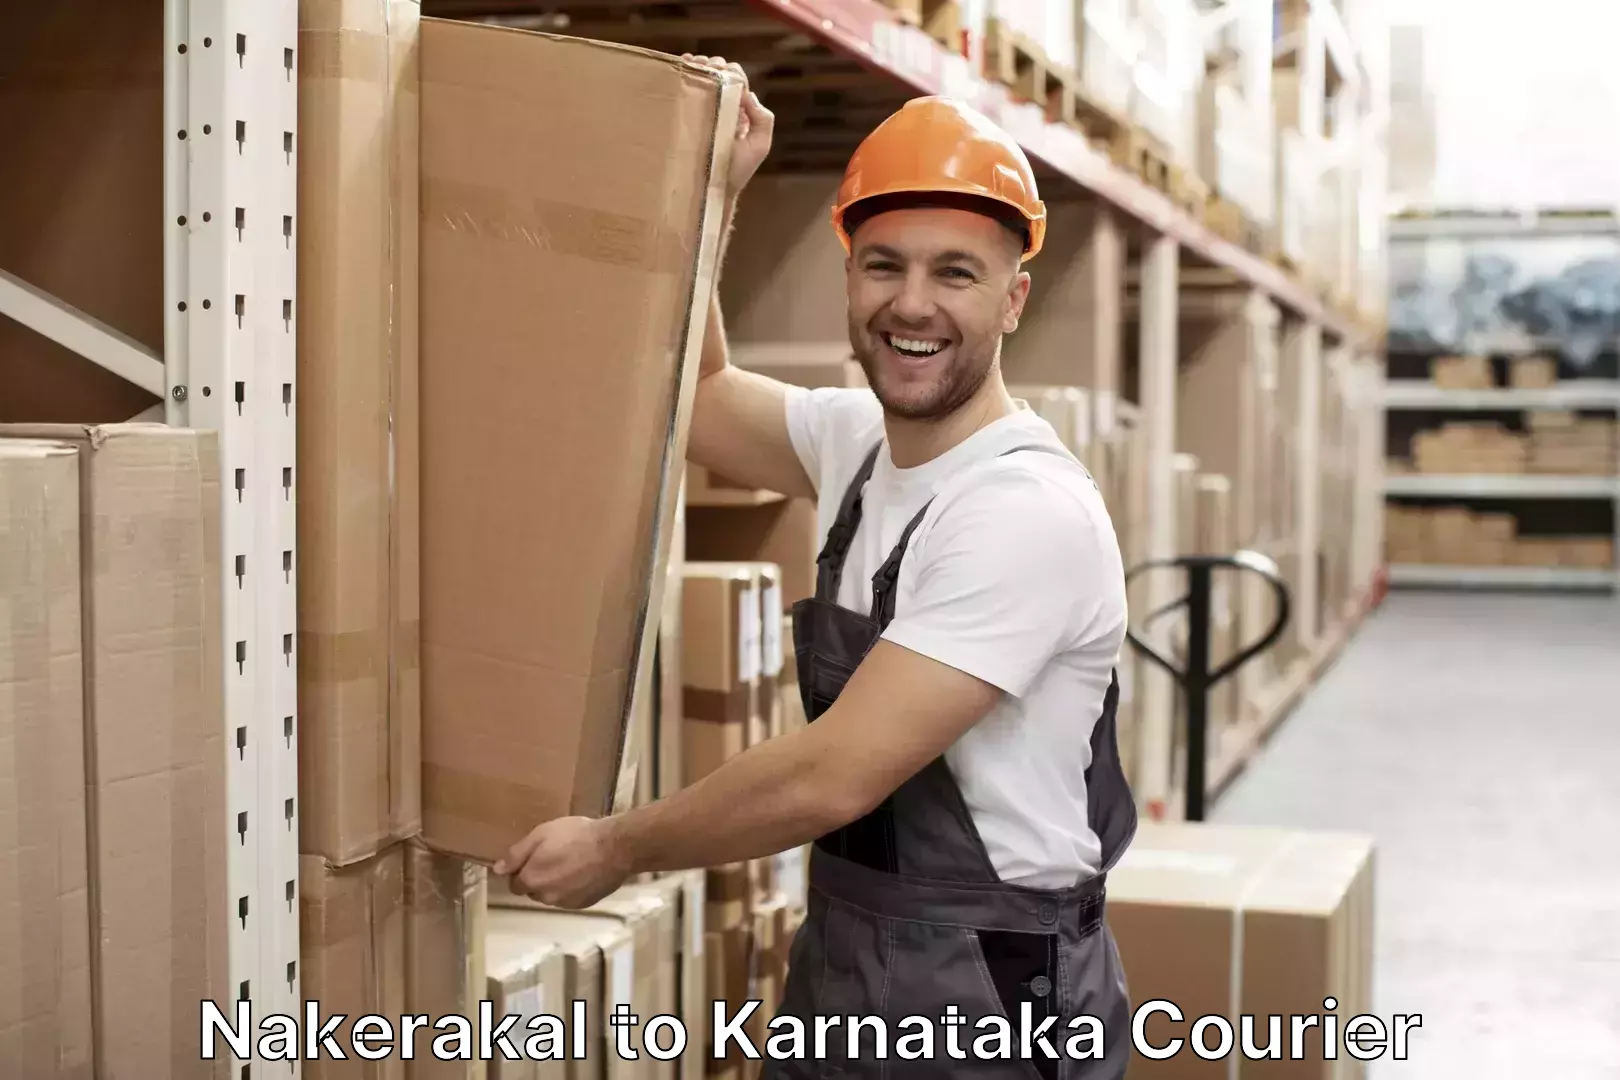 Luggage shipment strategy Nakerakal to Pedapudi